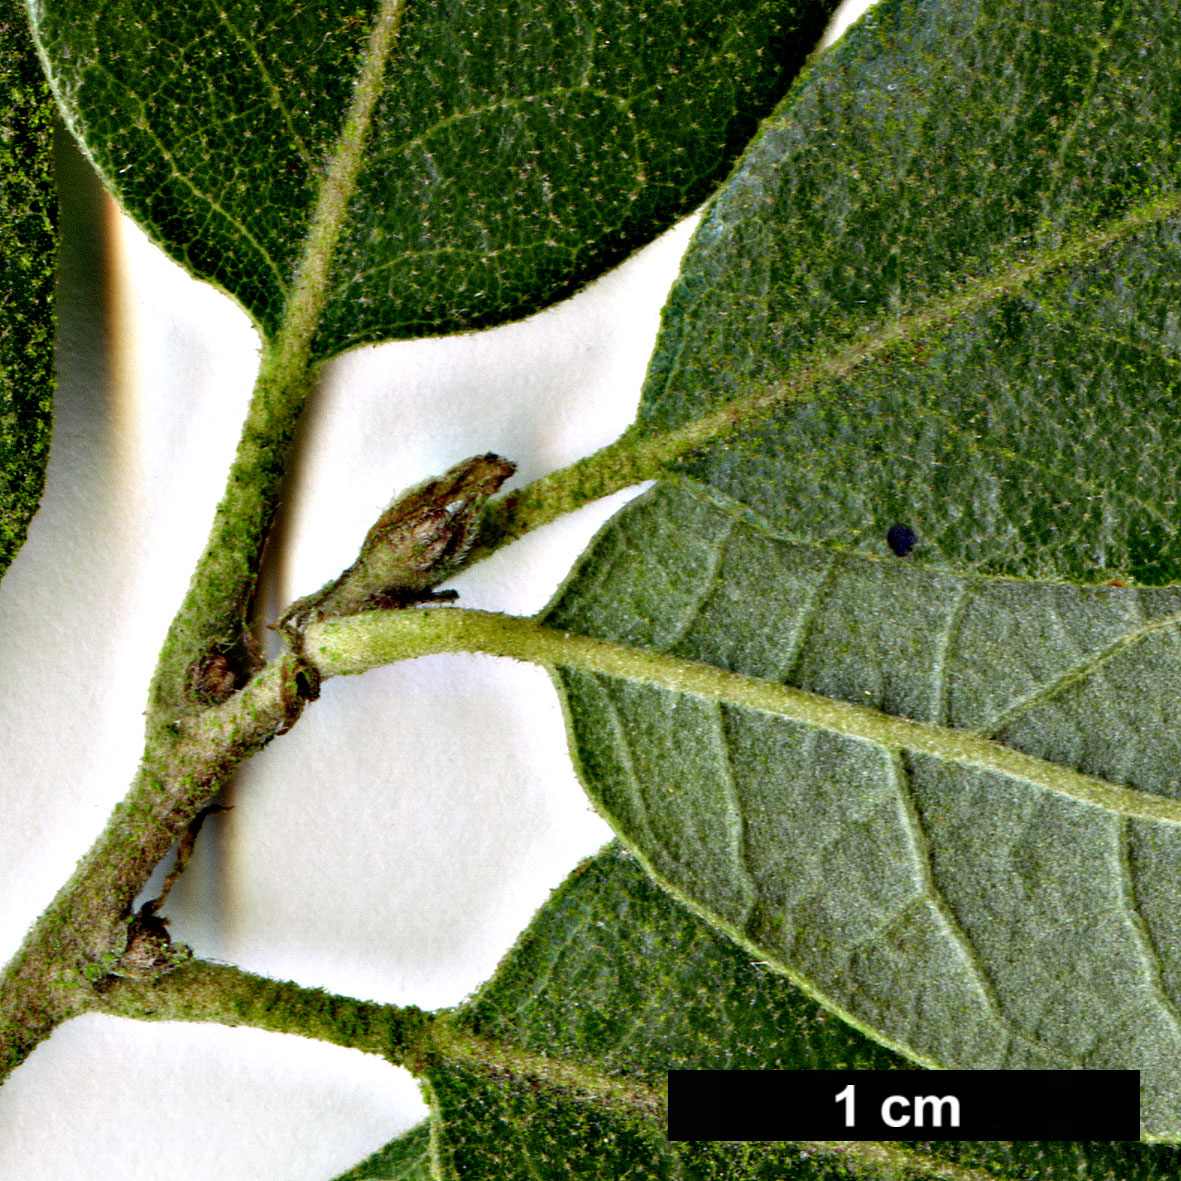 High resolution image: Family: Fagaceae - Genus: Quercus - Taxon: ×crenata - SpeciesSub: 'Diversifolia' (Q.cerris × Q.suber)